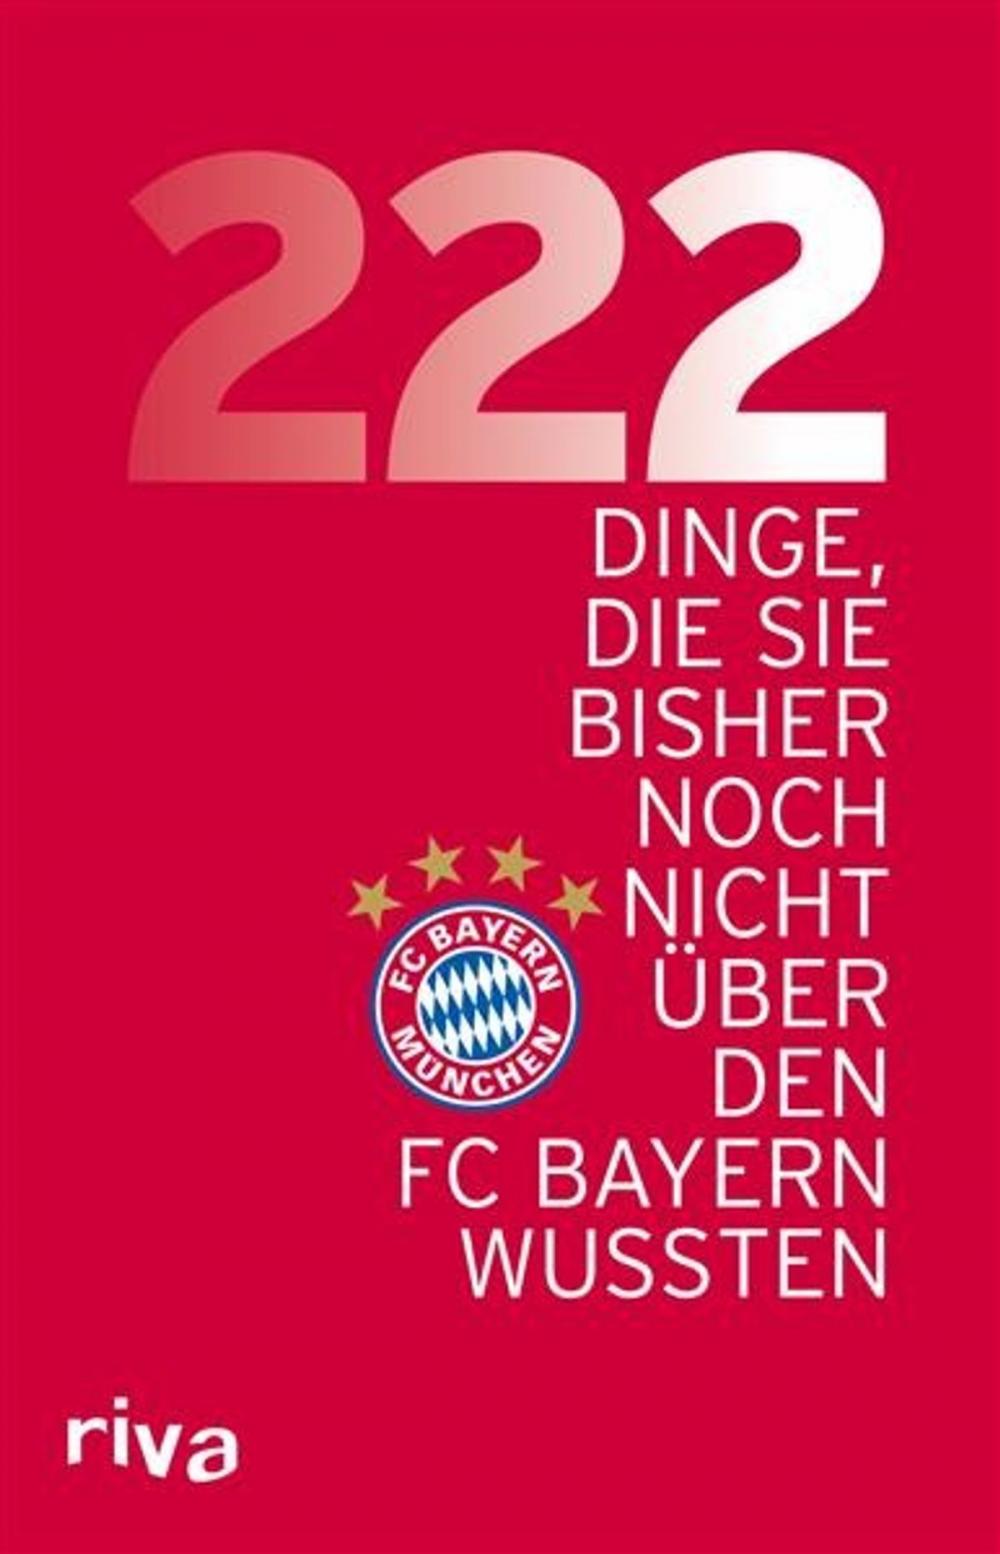 Big bigCover of 222 Dinge, die Sie bisher noch nicht über den FC Bayern wussten